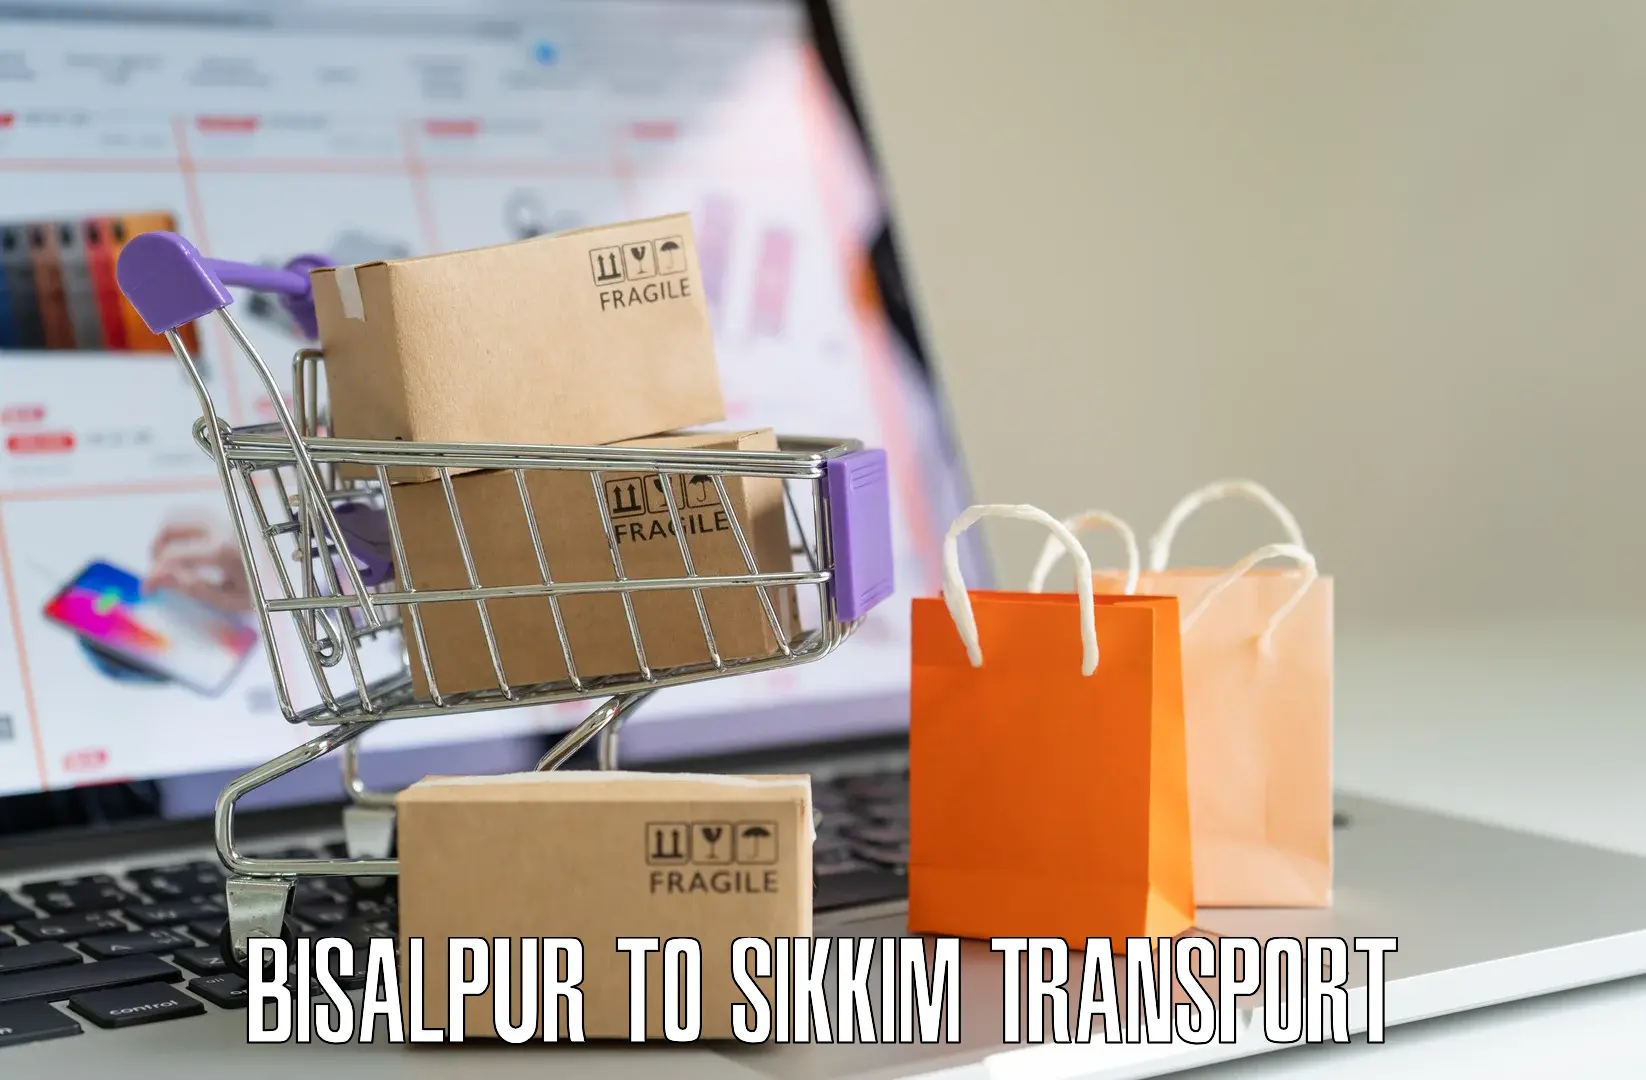 Transport in sharing Bisalpur to West Sikkim